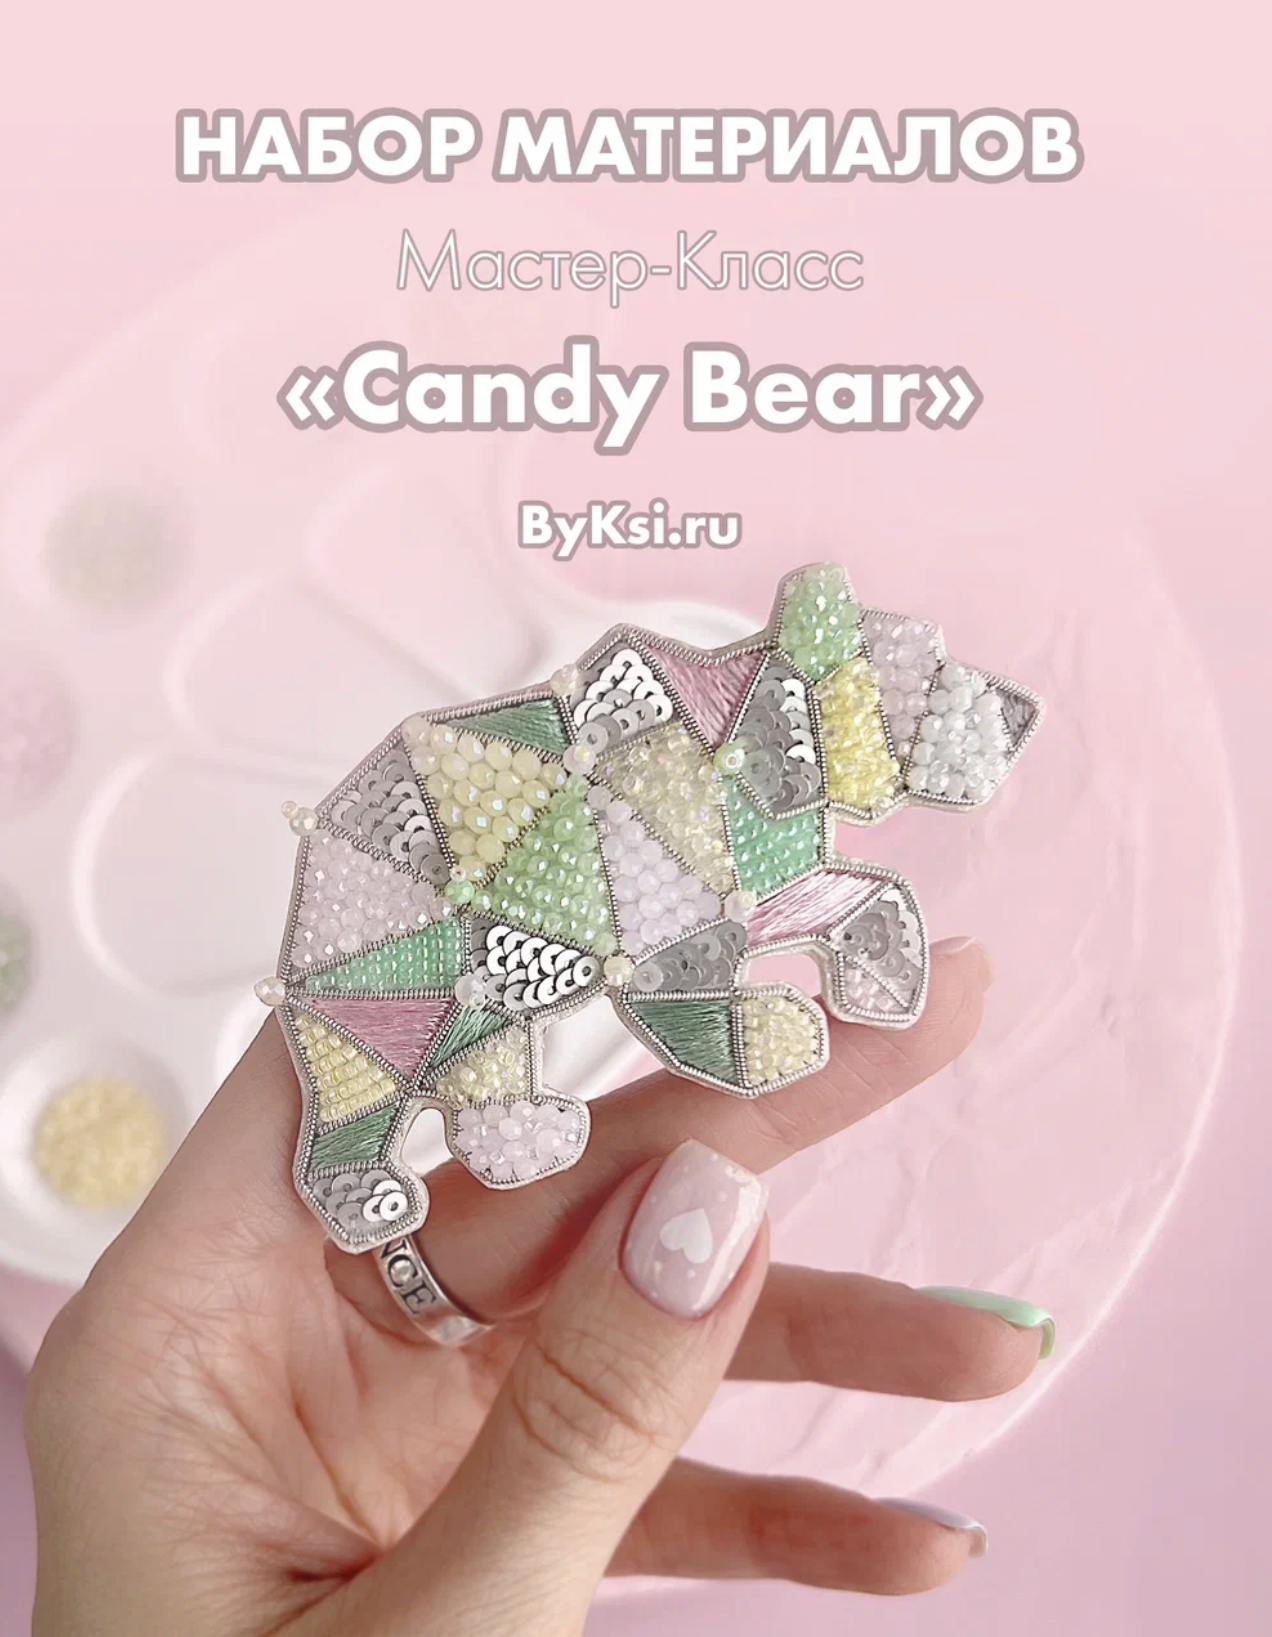 Набор для мастер-класса “Candy bear” By Ksi